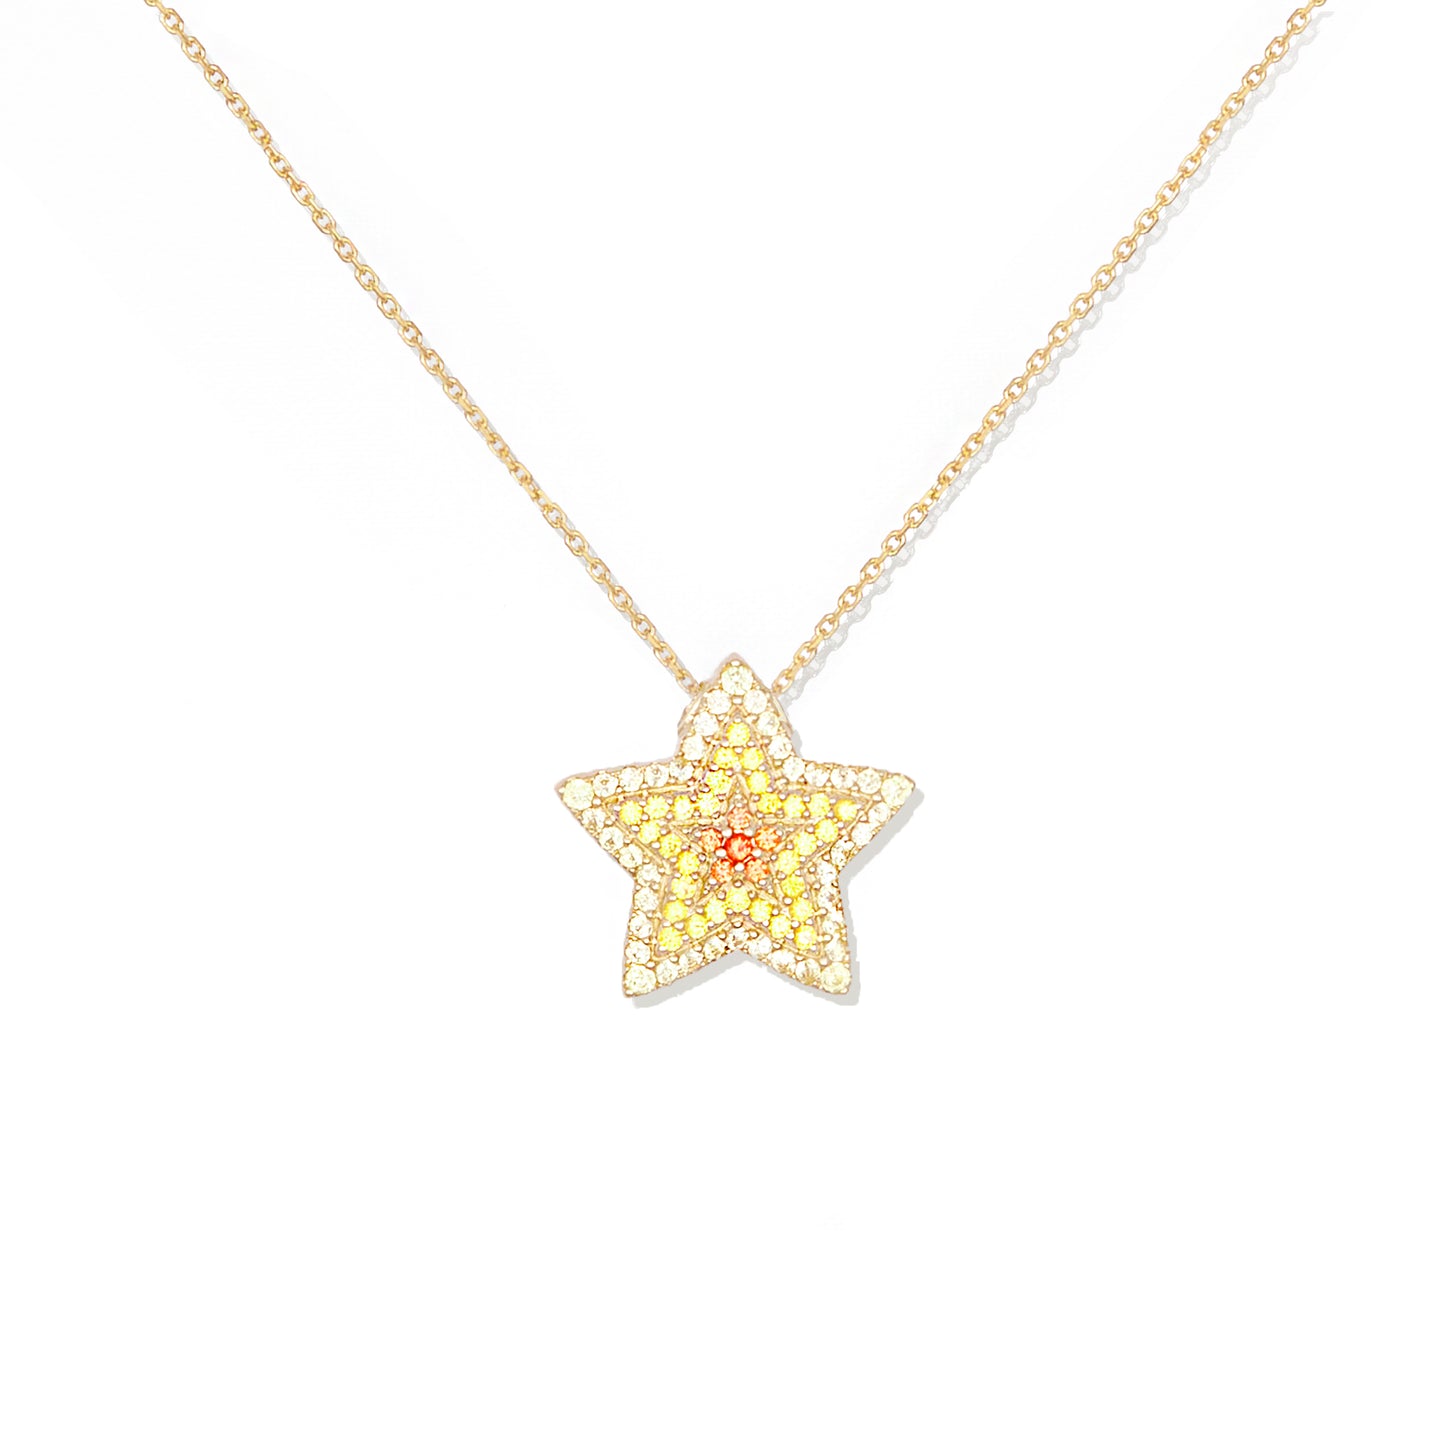 JuJu Star Charm Necklace